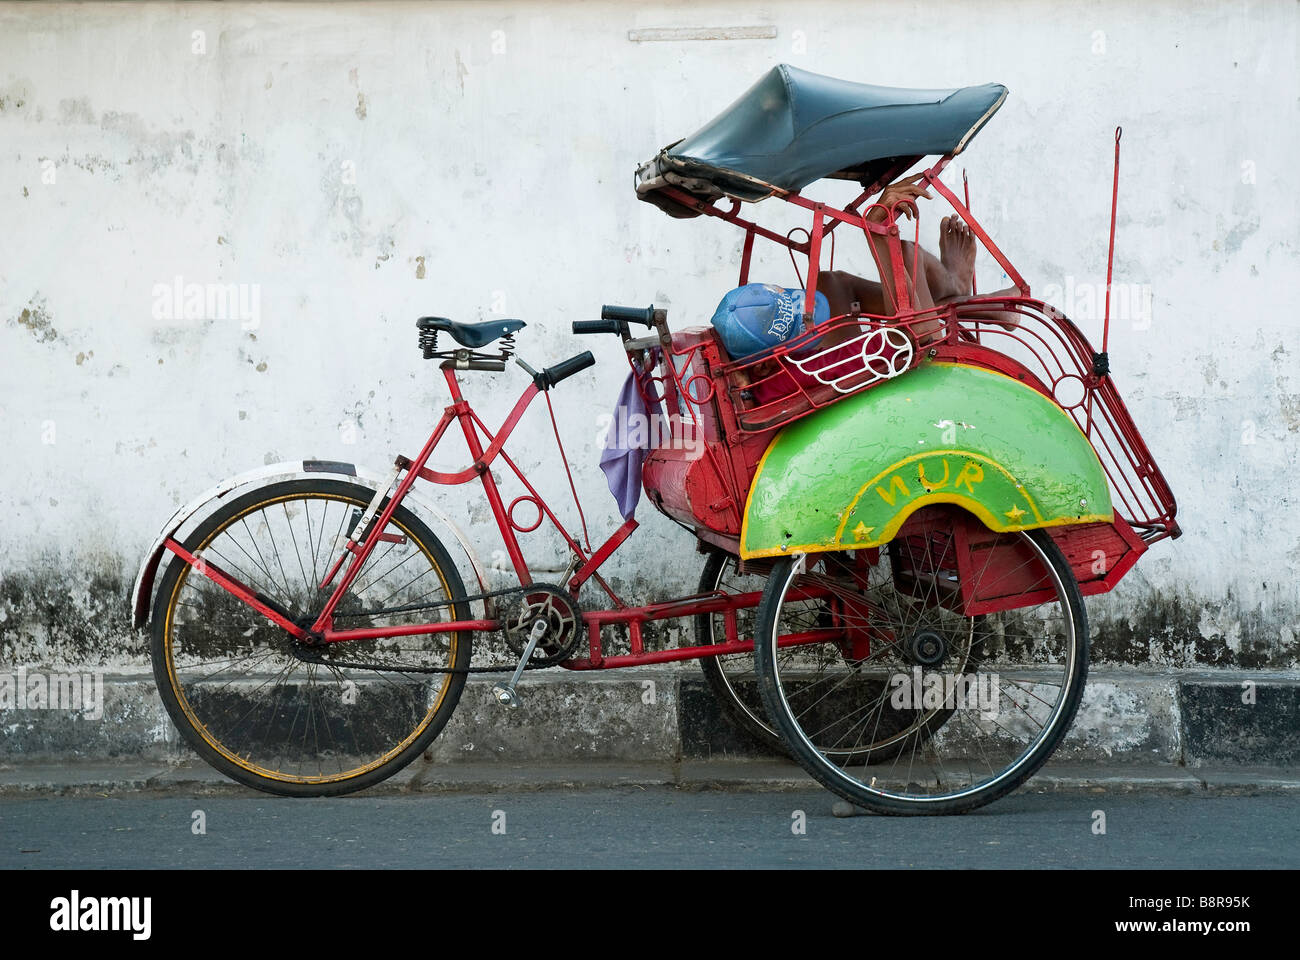 yogyakarta indonesia java becak asia travel tuktuk Stock Photo